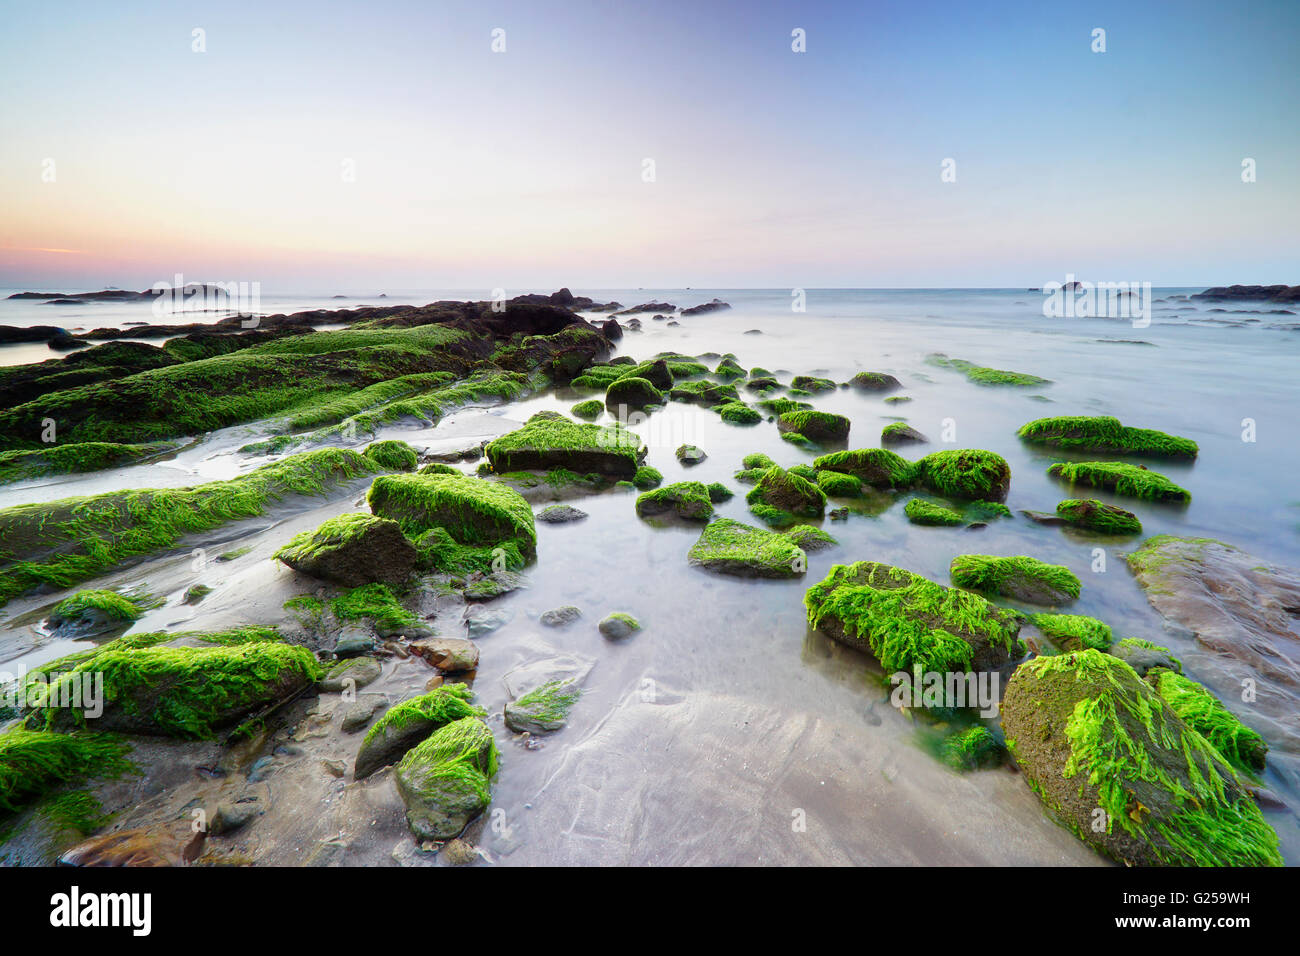 Moss covered rocks, Tindakon Dazang Beach, Kudat, Borneo, Malaysia Stock Photo